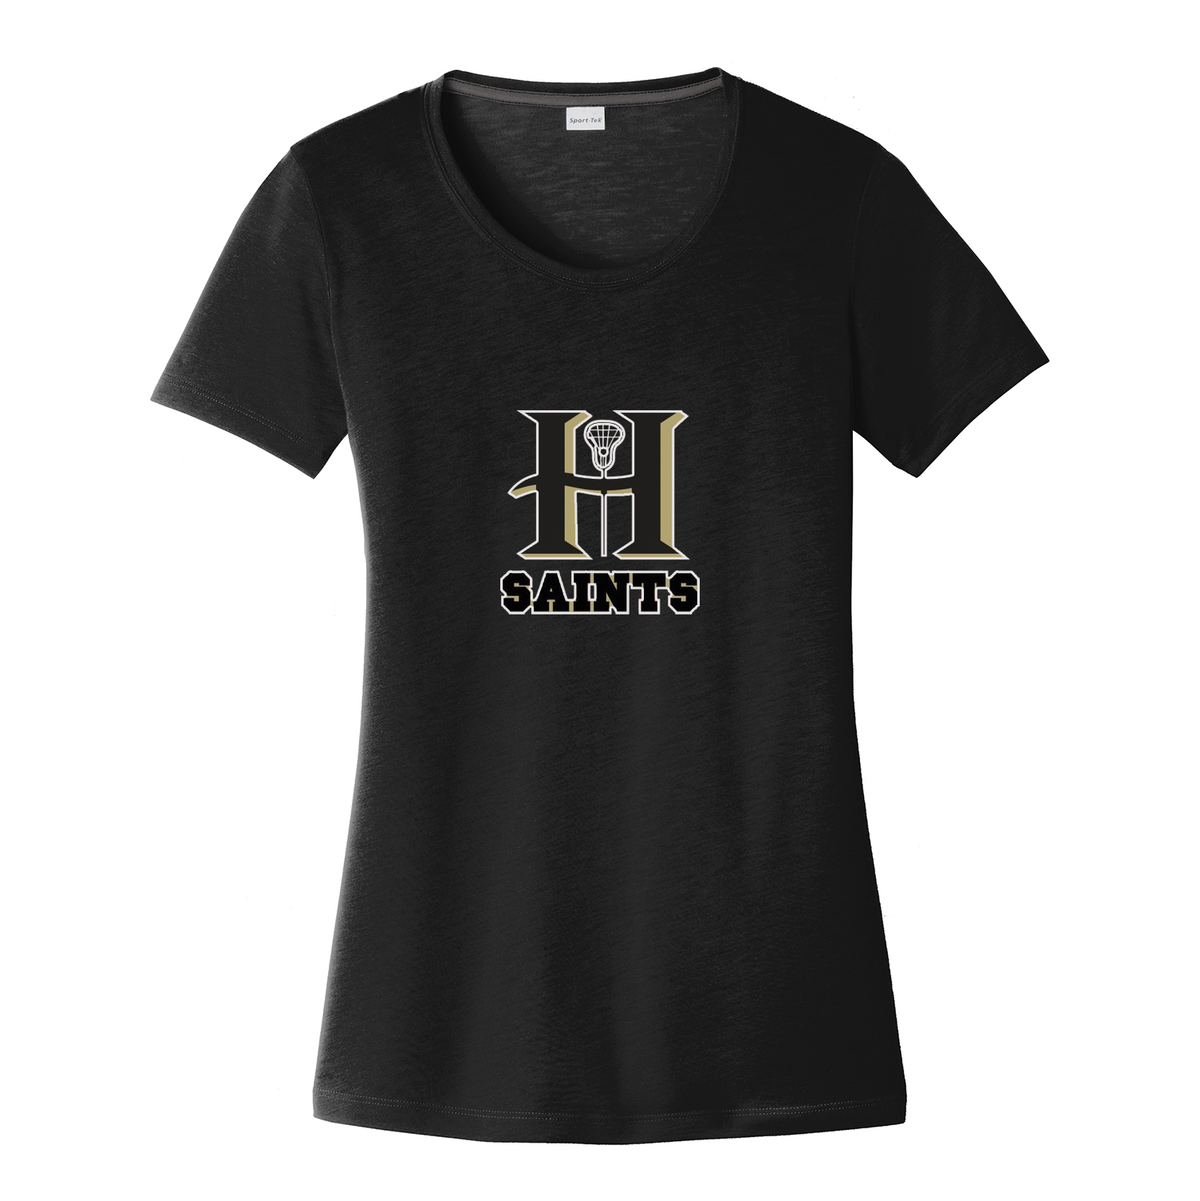 HAYLA Saints Women's CottonTouch Black Performance T-Shirt